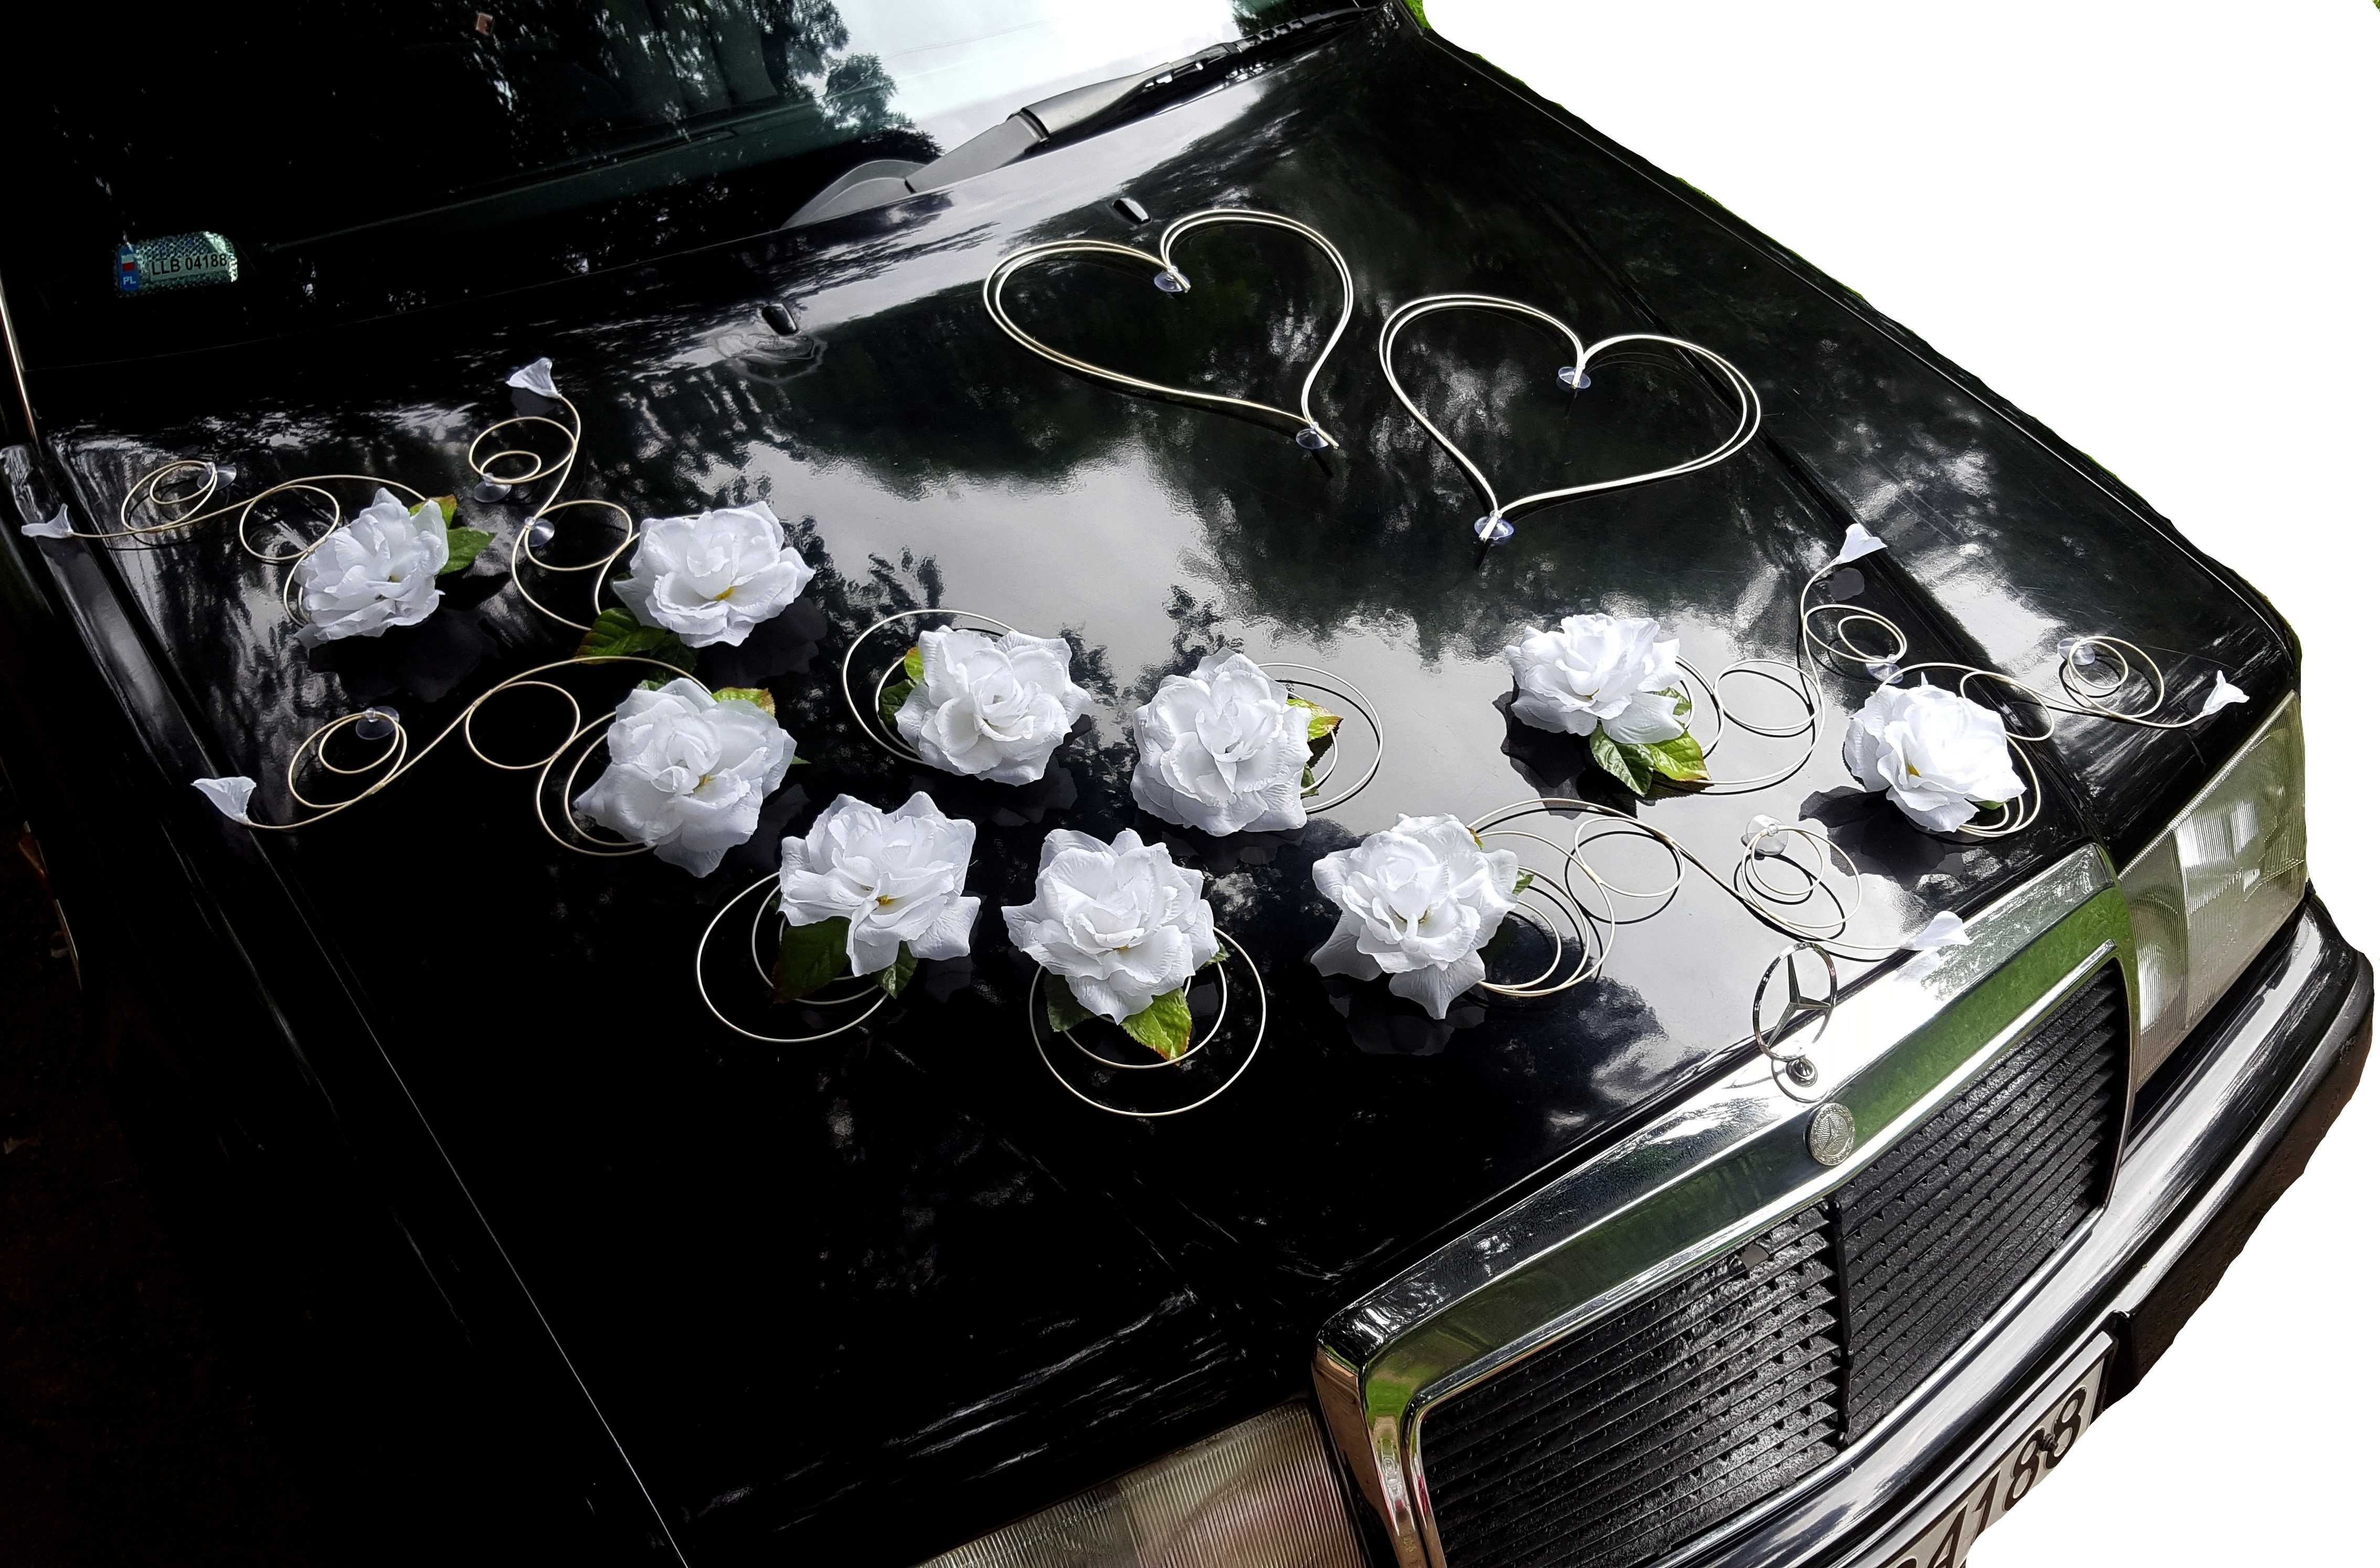 Dekoracja auta Ozdoba samochodu Ślubnego Weselnego  Serca